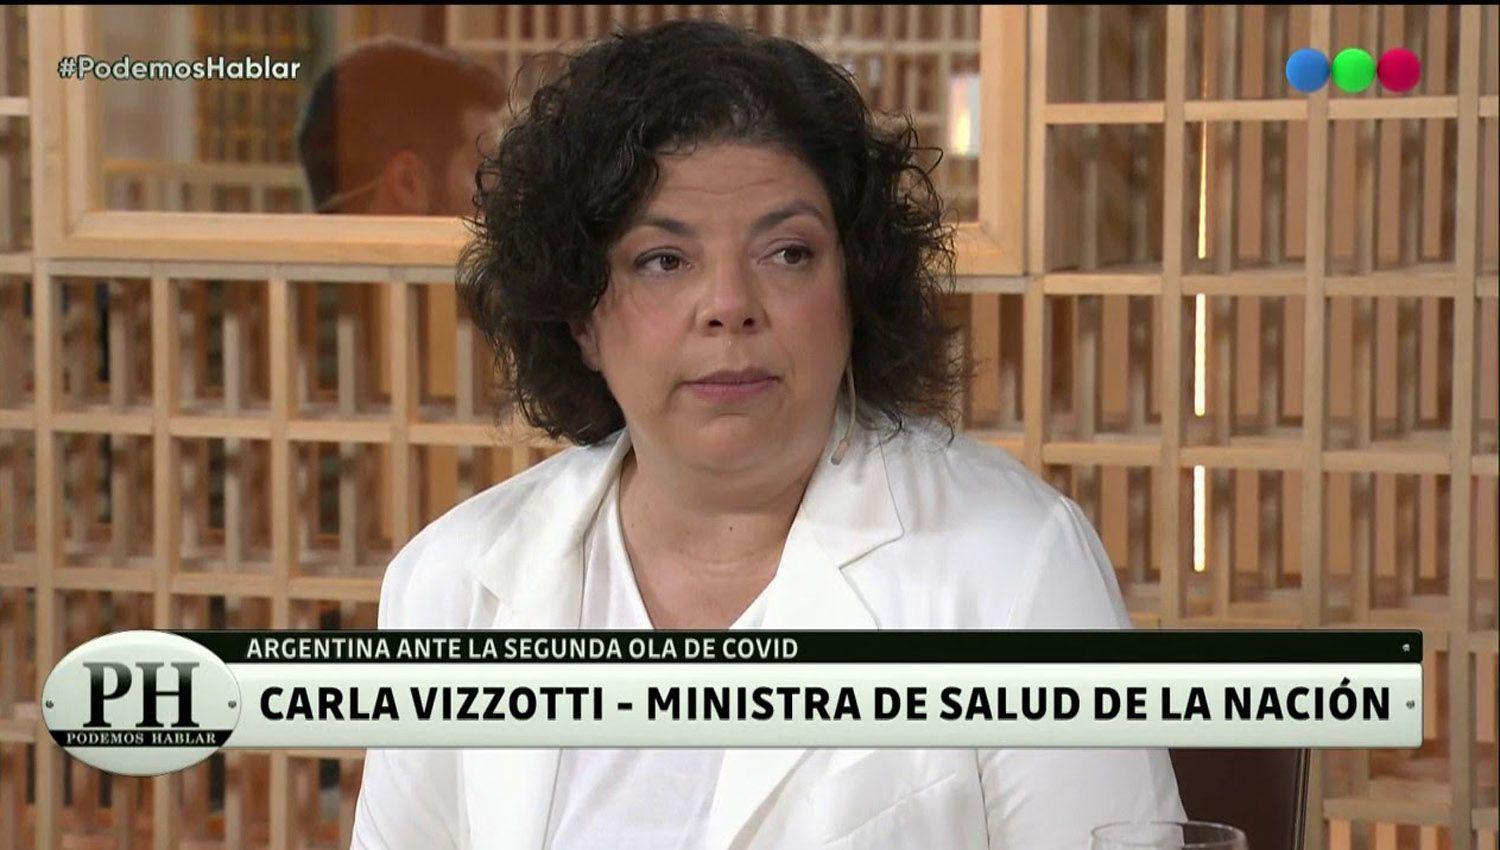 Carla Vizzotti dijo que ya no habraacute un aislamiento estricto porque ldquoahora tenemos la vacunardquo